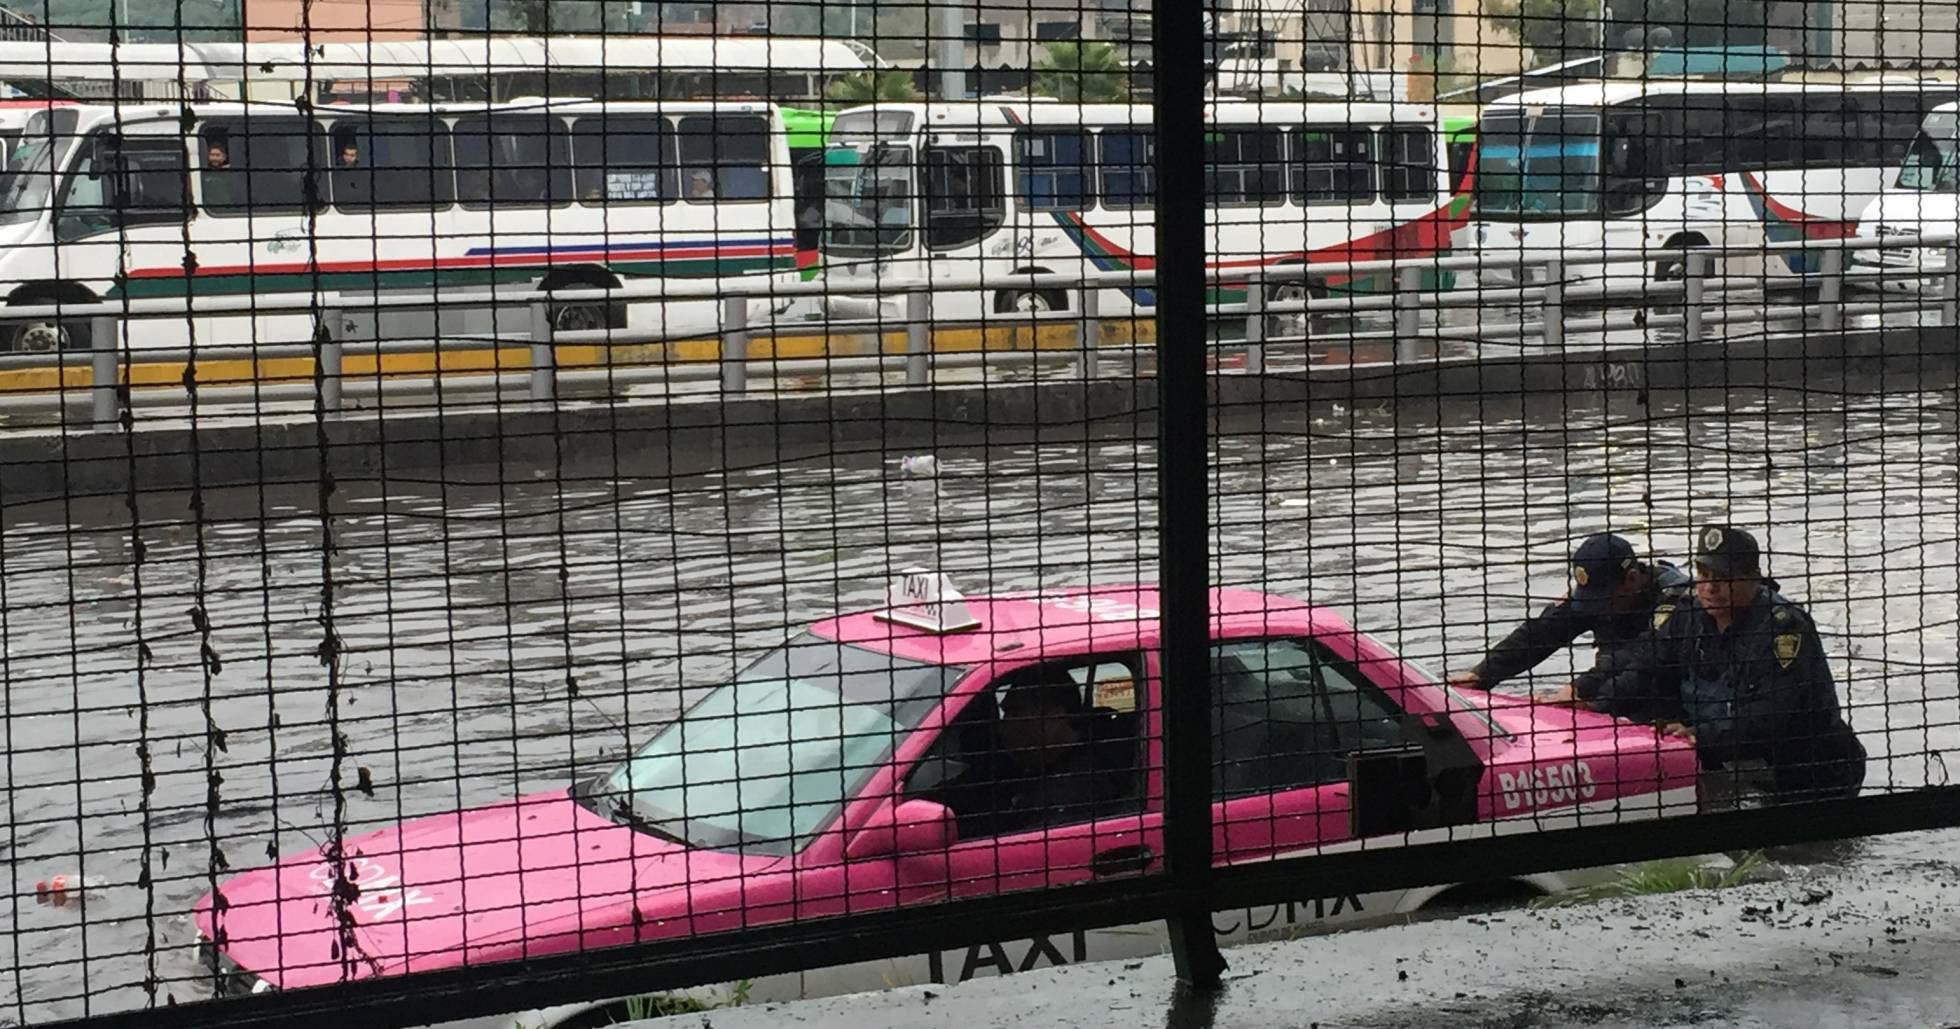 Las lluvias colapsan el norte de la Ciudad de México - Archivo 29/09/2020 - Noticias Viajeras: de Actualidad, Curiosas...